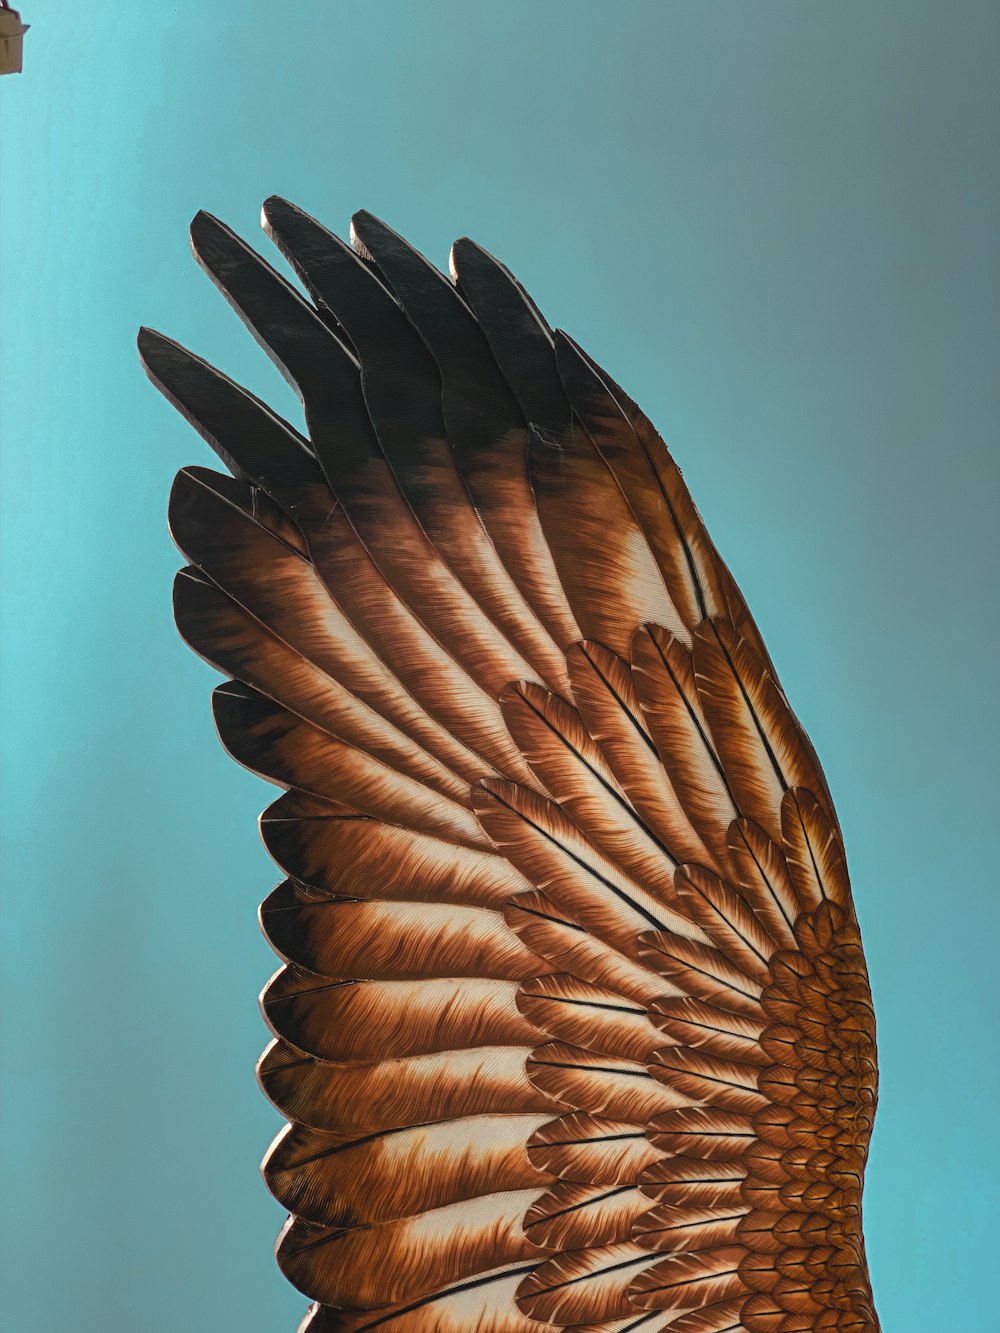 pájaro marrón volando durante el día